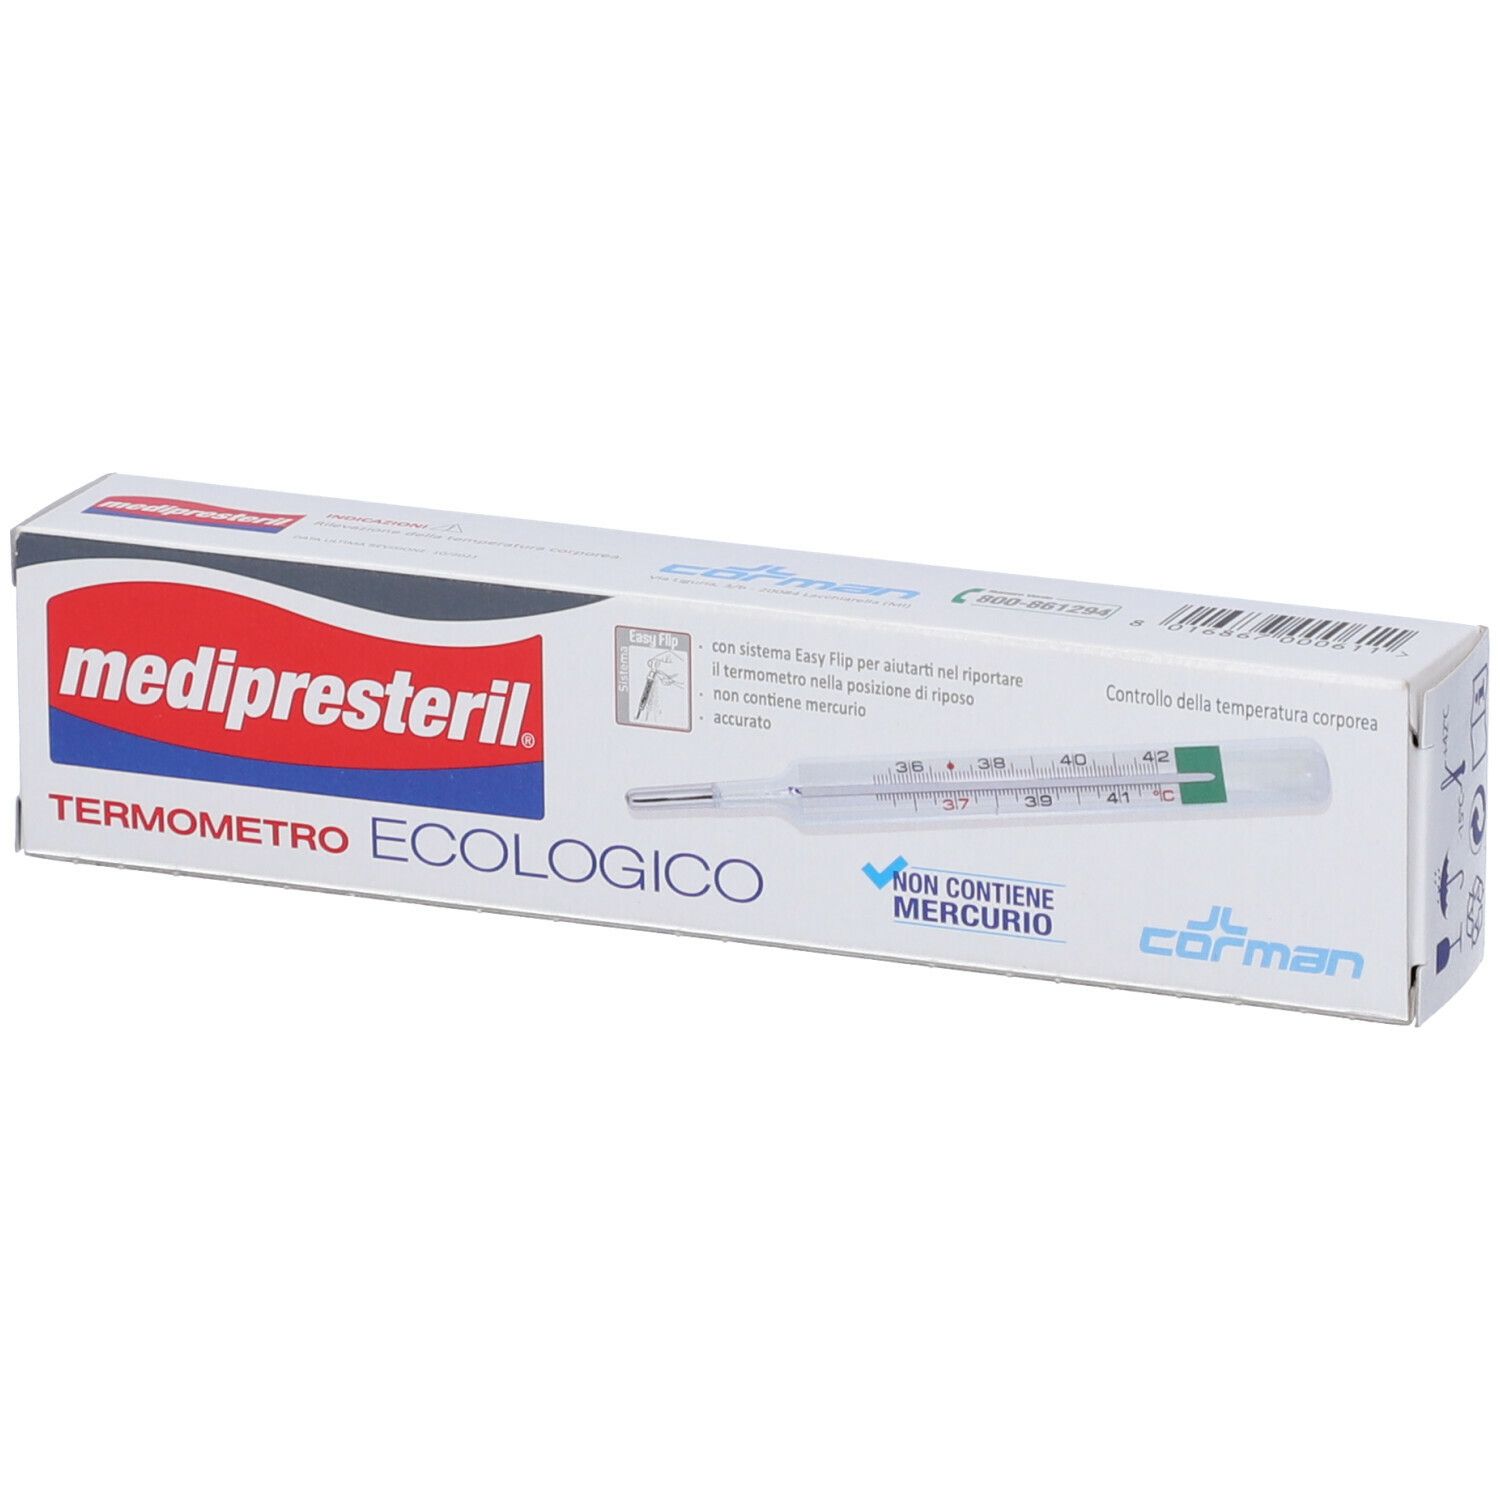 Medipresteril® Termometro Ecologico